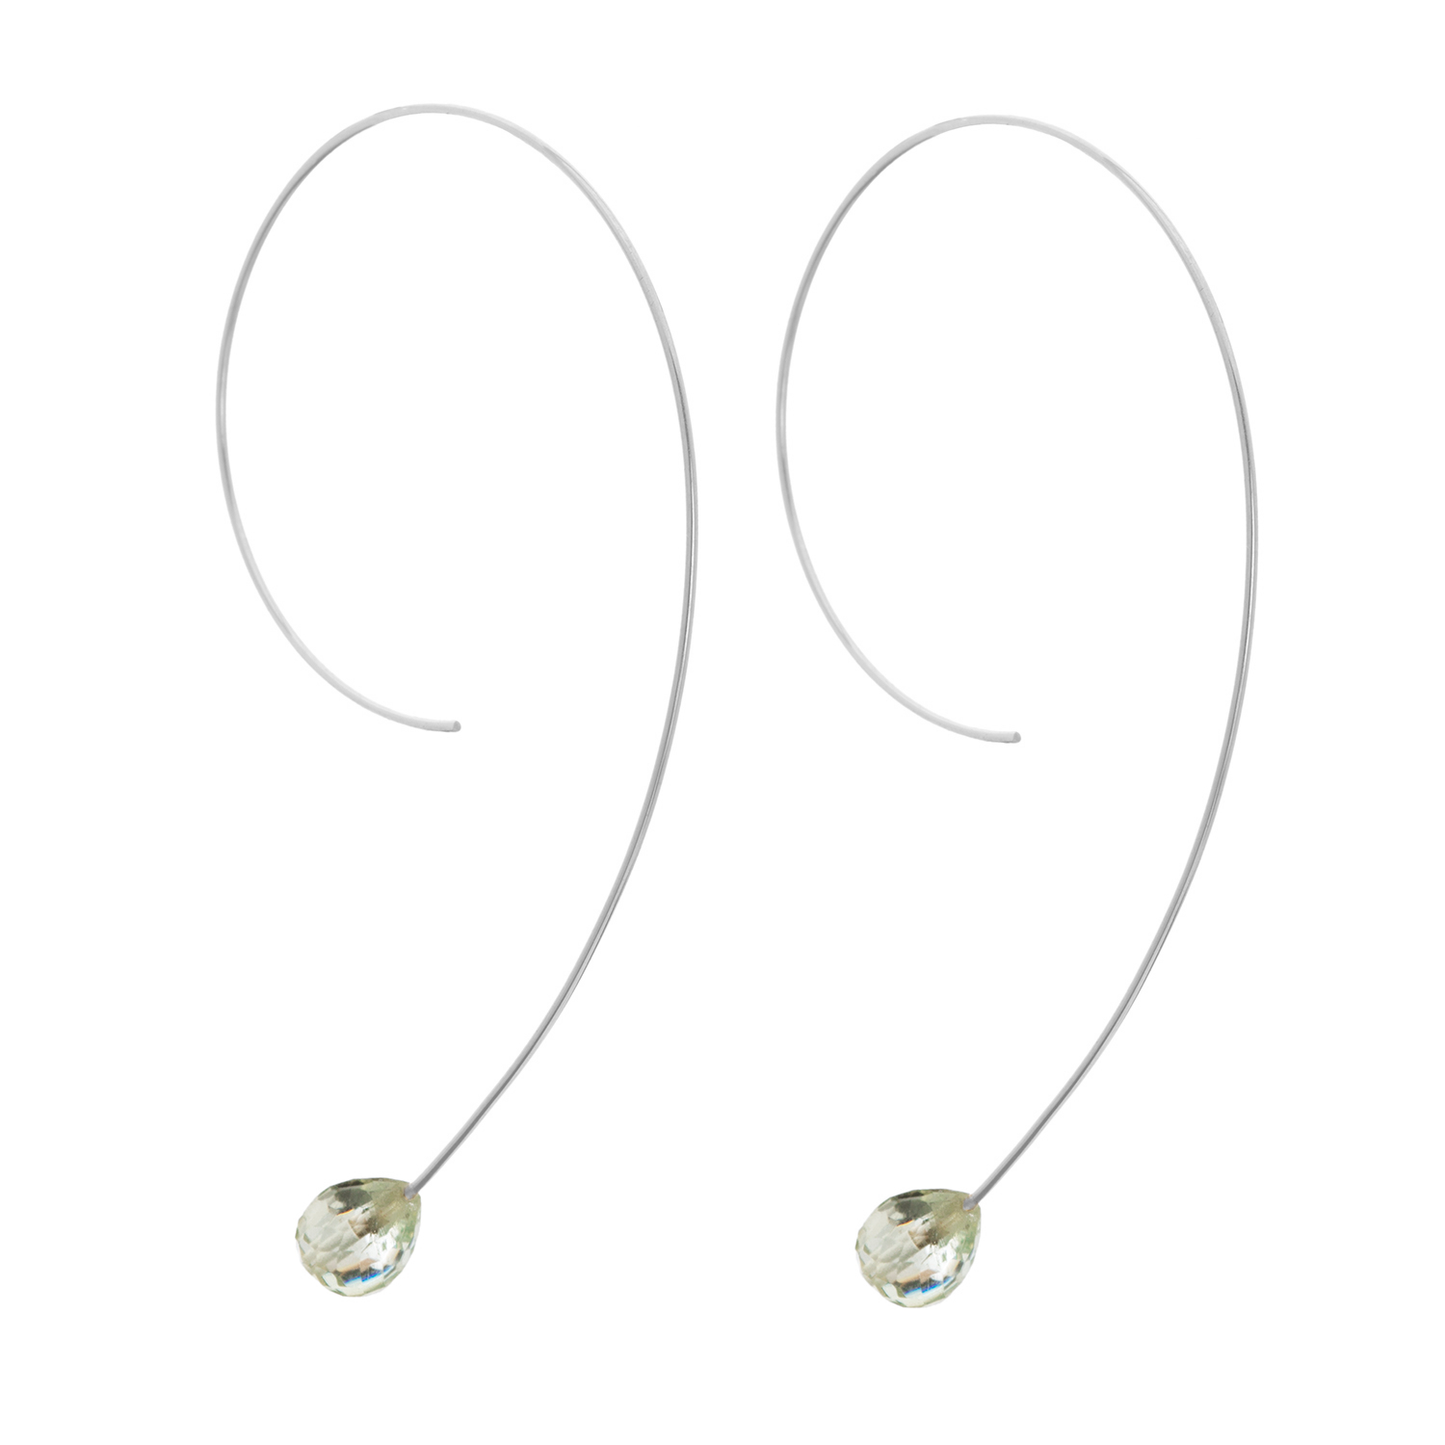 Long Loop Earrings with Drop Gems